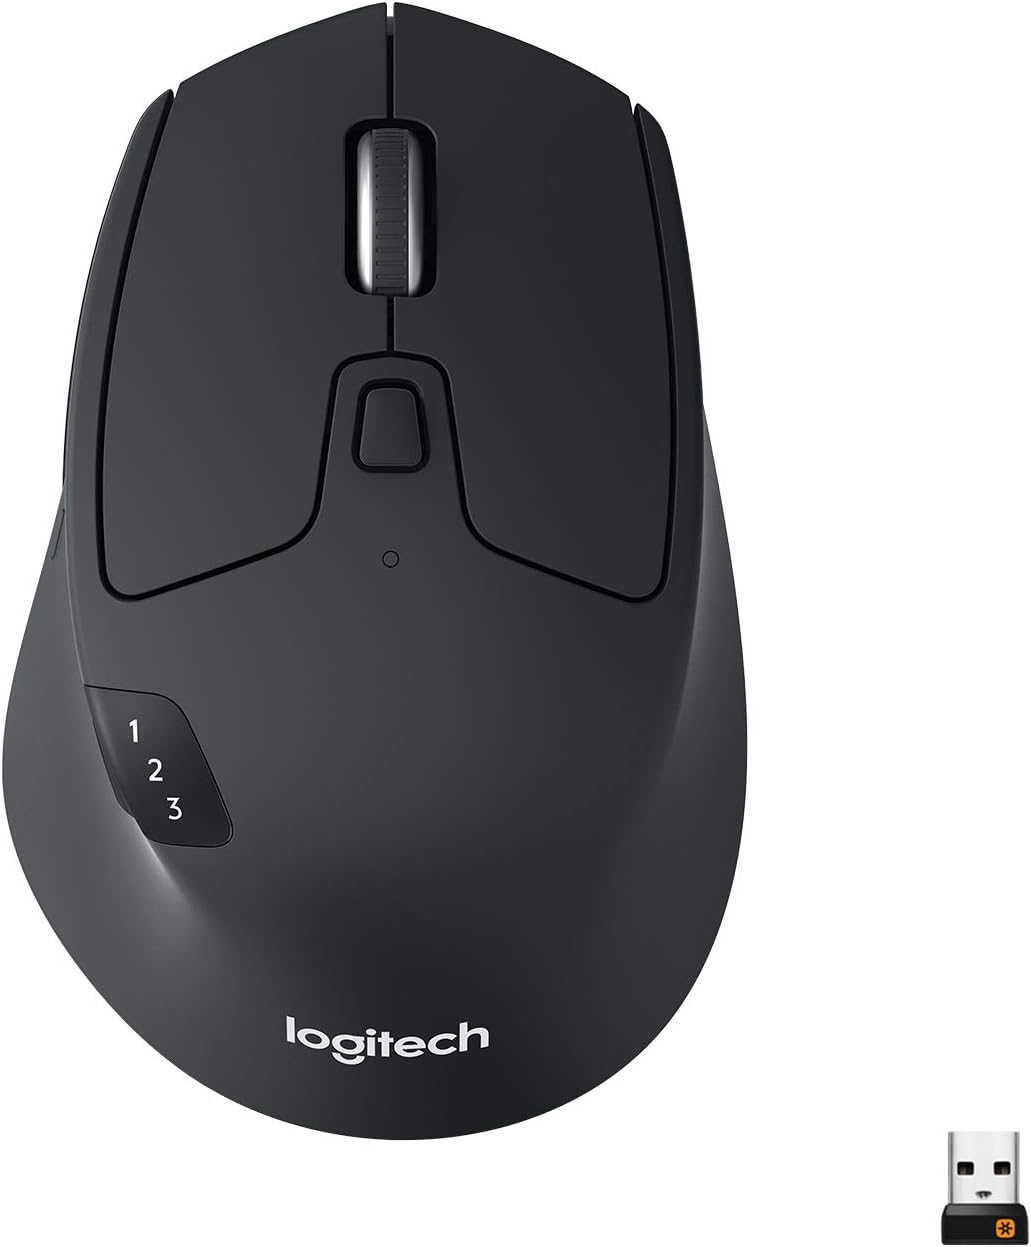 An image of a black Logitech M730 mouse